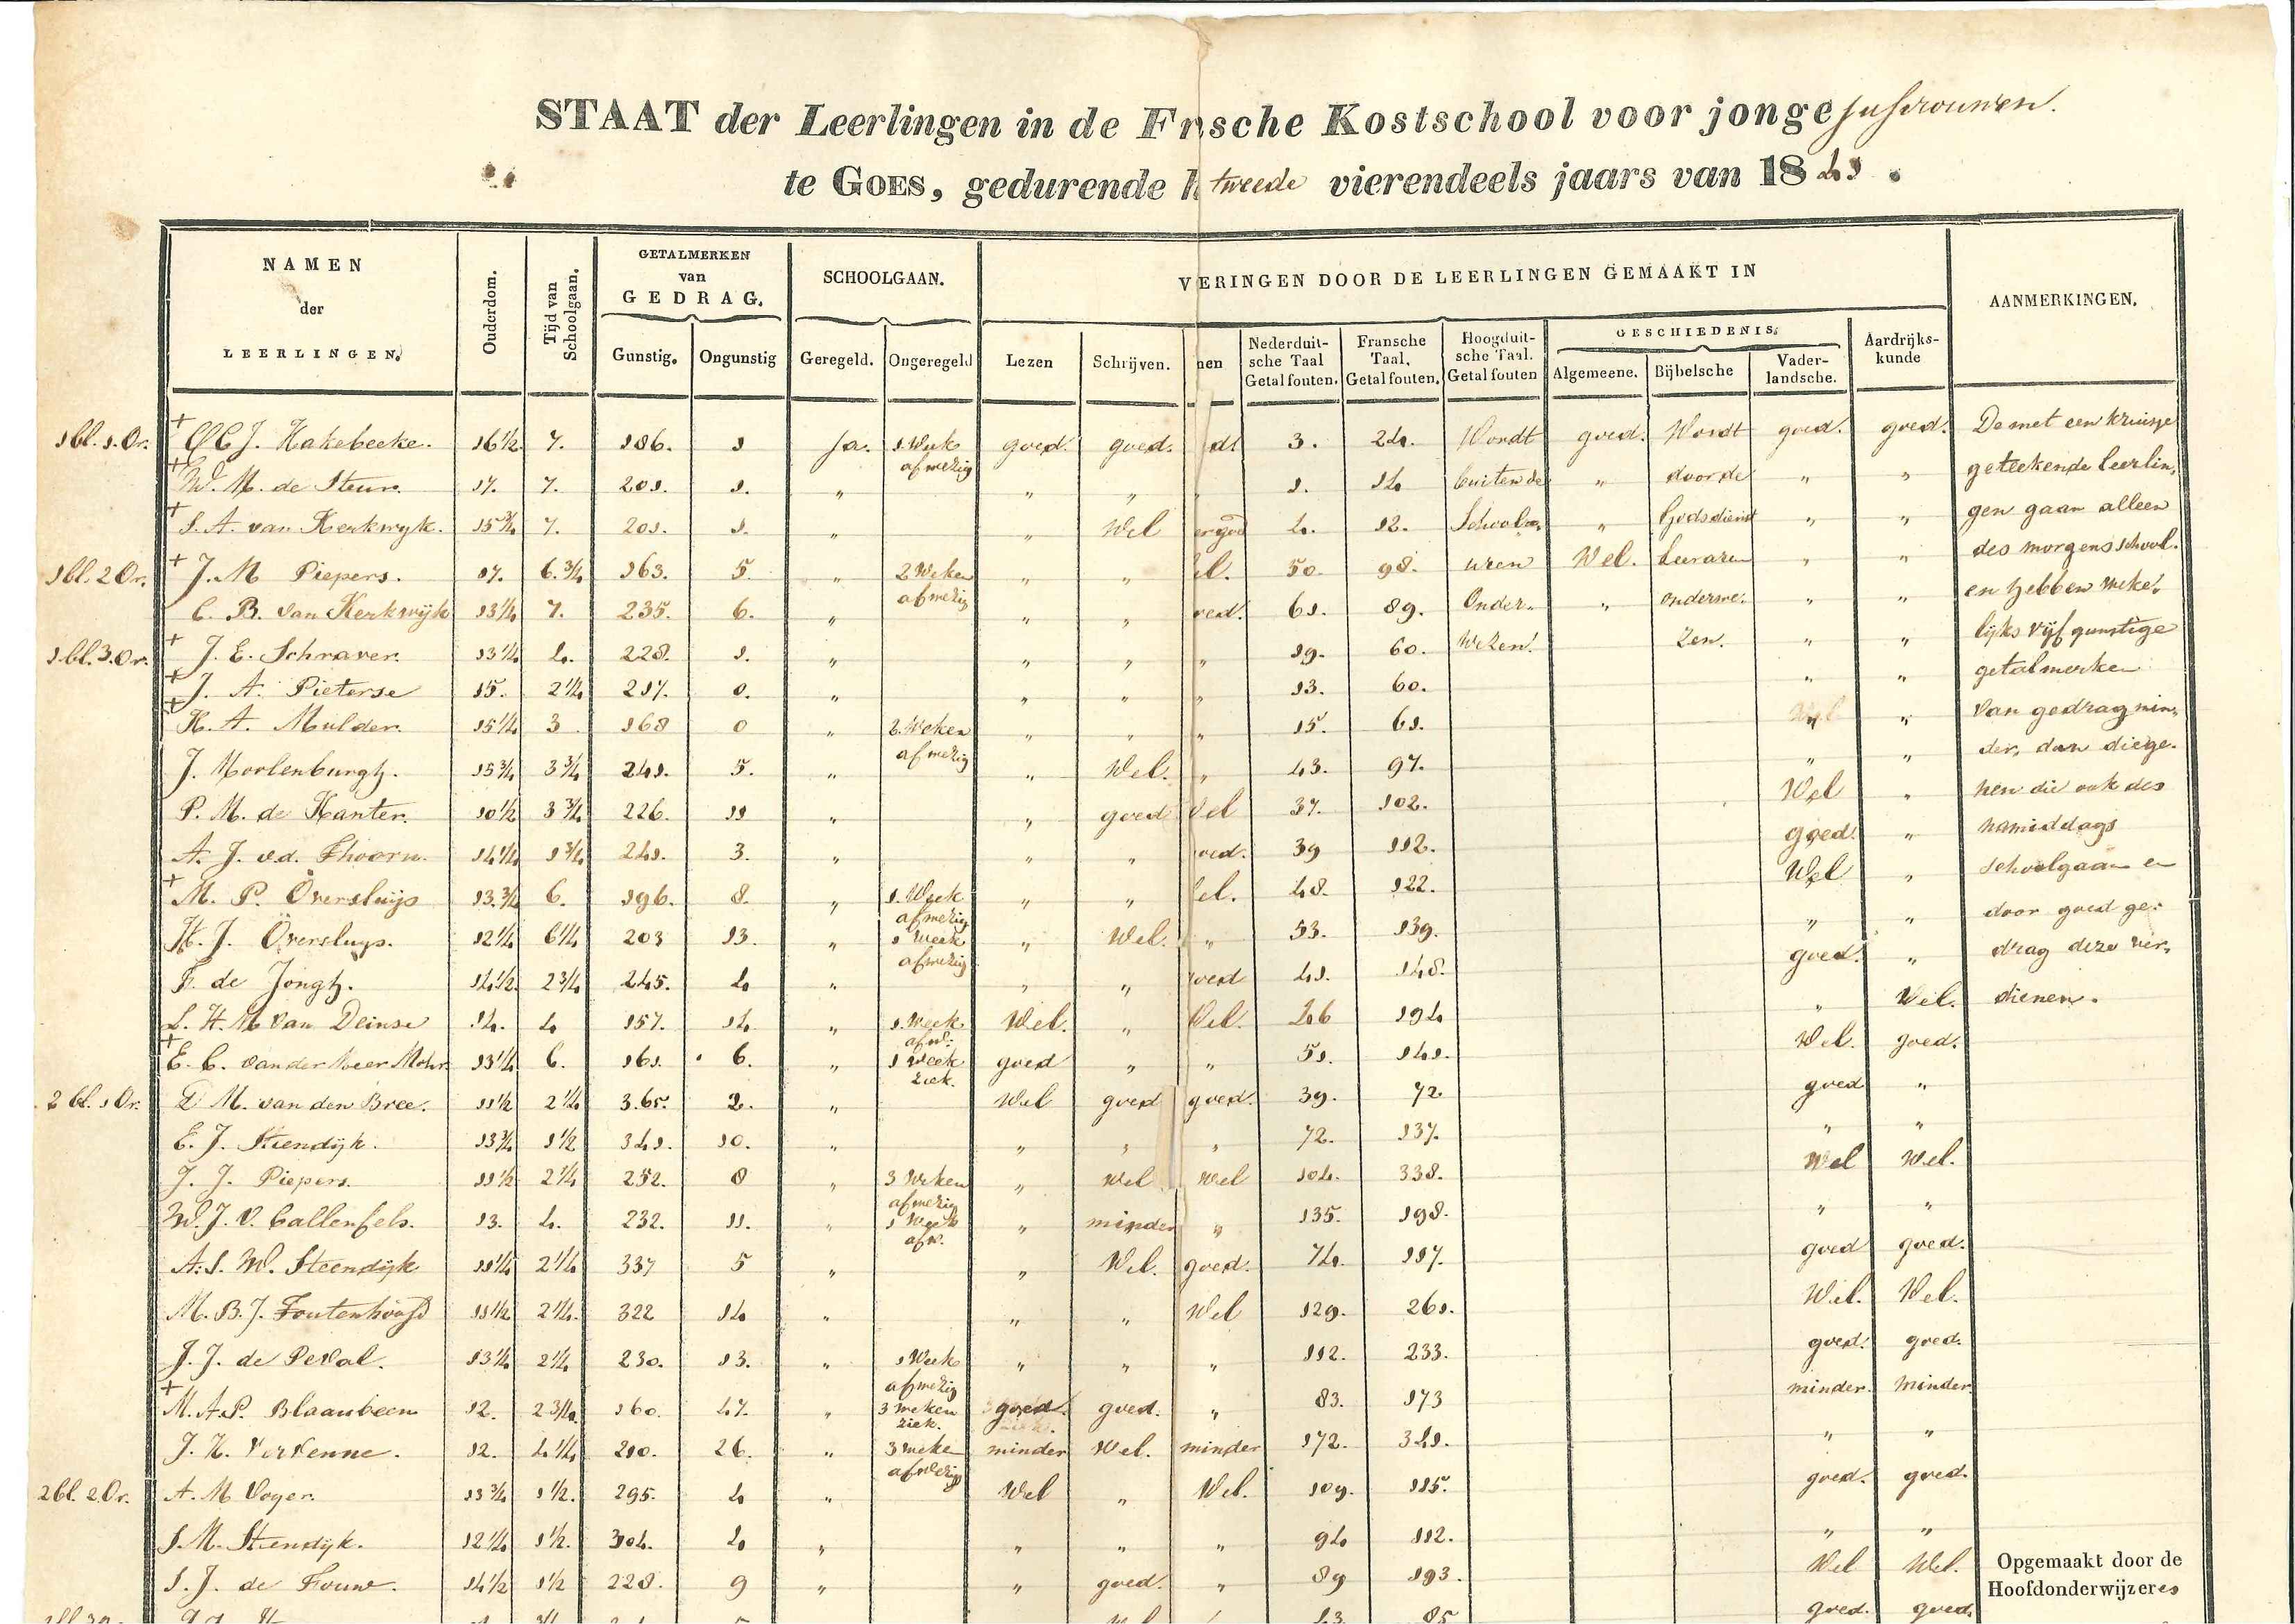 Naamlijst van meisjes op de Franse kostschool, met studieresultaten, 1841. GAG.ASG.inv.nr. 3287.